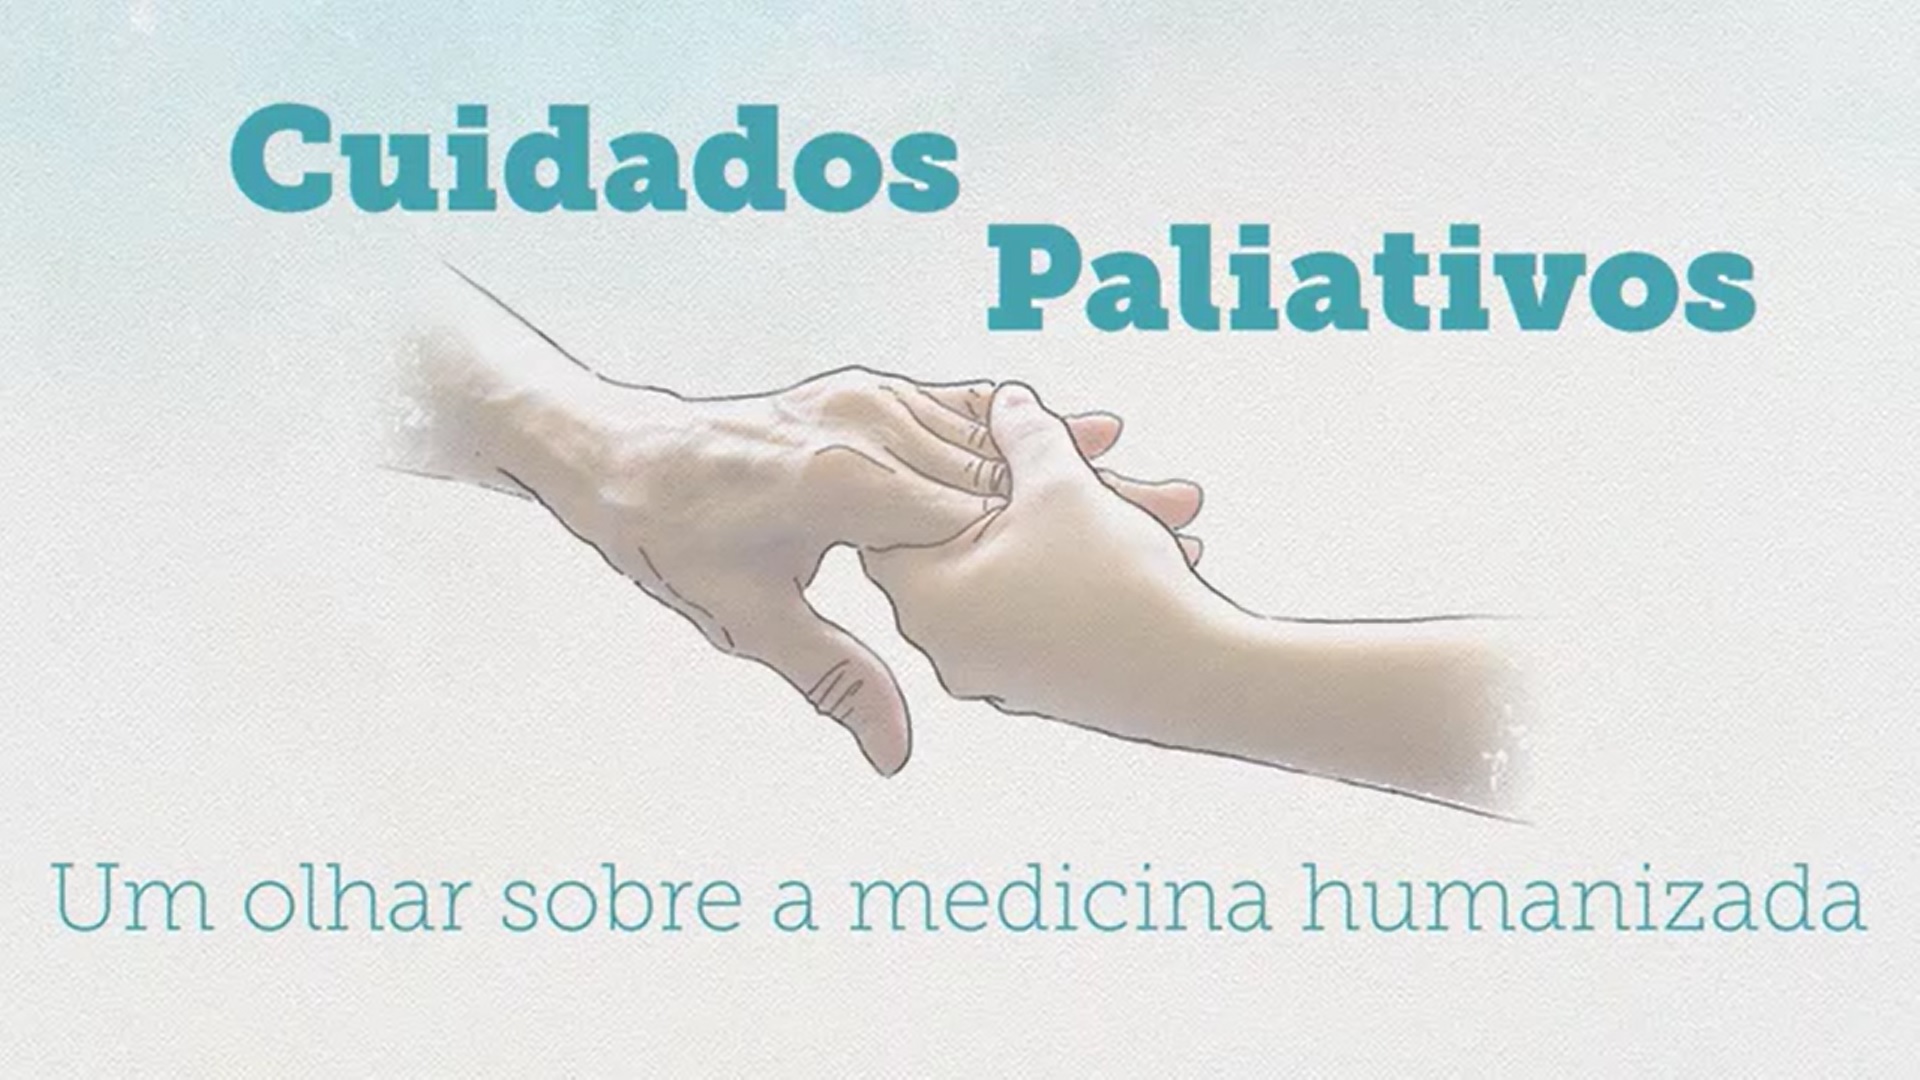 “Um olhar sobre a medicina humanizada”: minissérie aborda Cuidados Paliativos